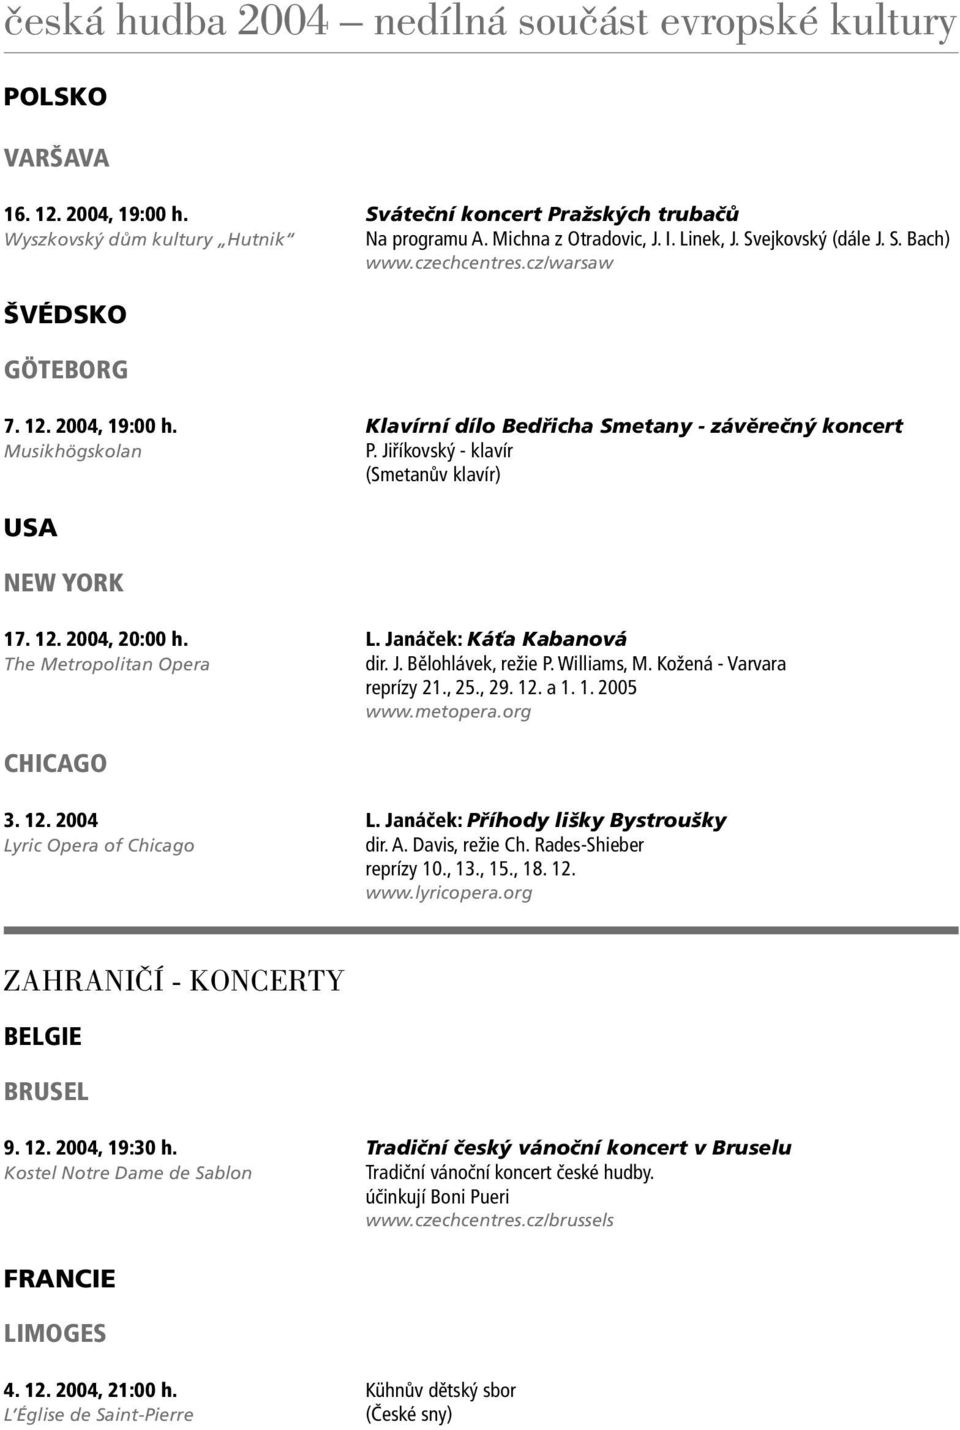 Janáček: Káťa Kabanová The Metropolitan Opera dir. J. Bělohlávek, režie P. Williams, M. Kožená - Varvara reprízy 21., 25., 29. 12. a 1. 1. 2005 www.metopera.org CHICAGO 3. 12. 2004 L.